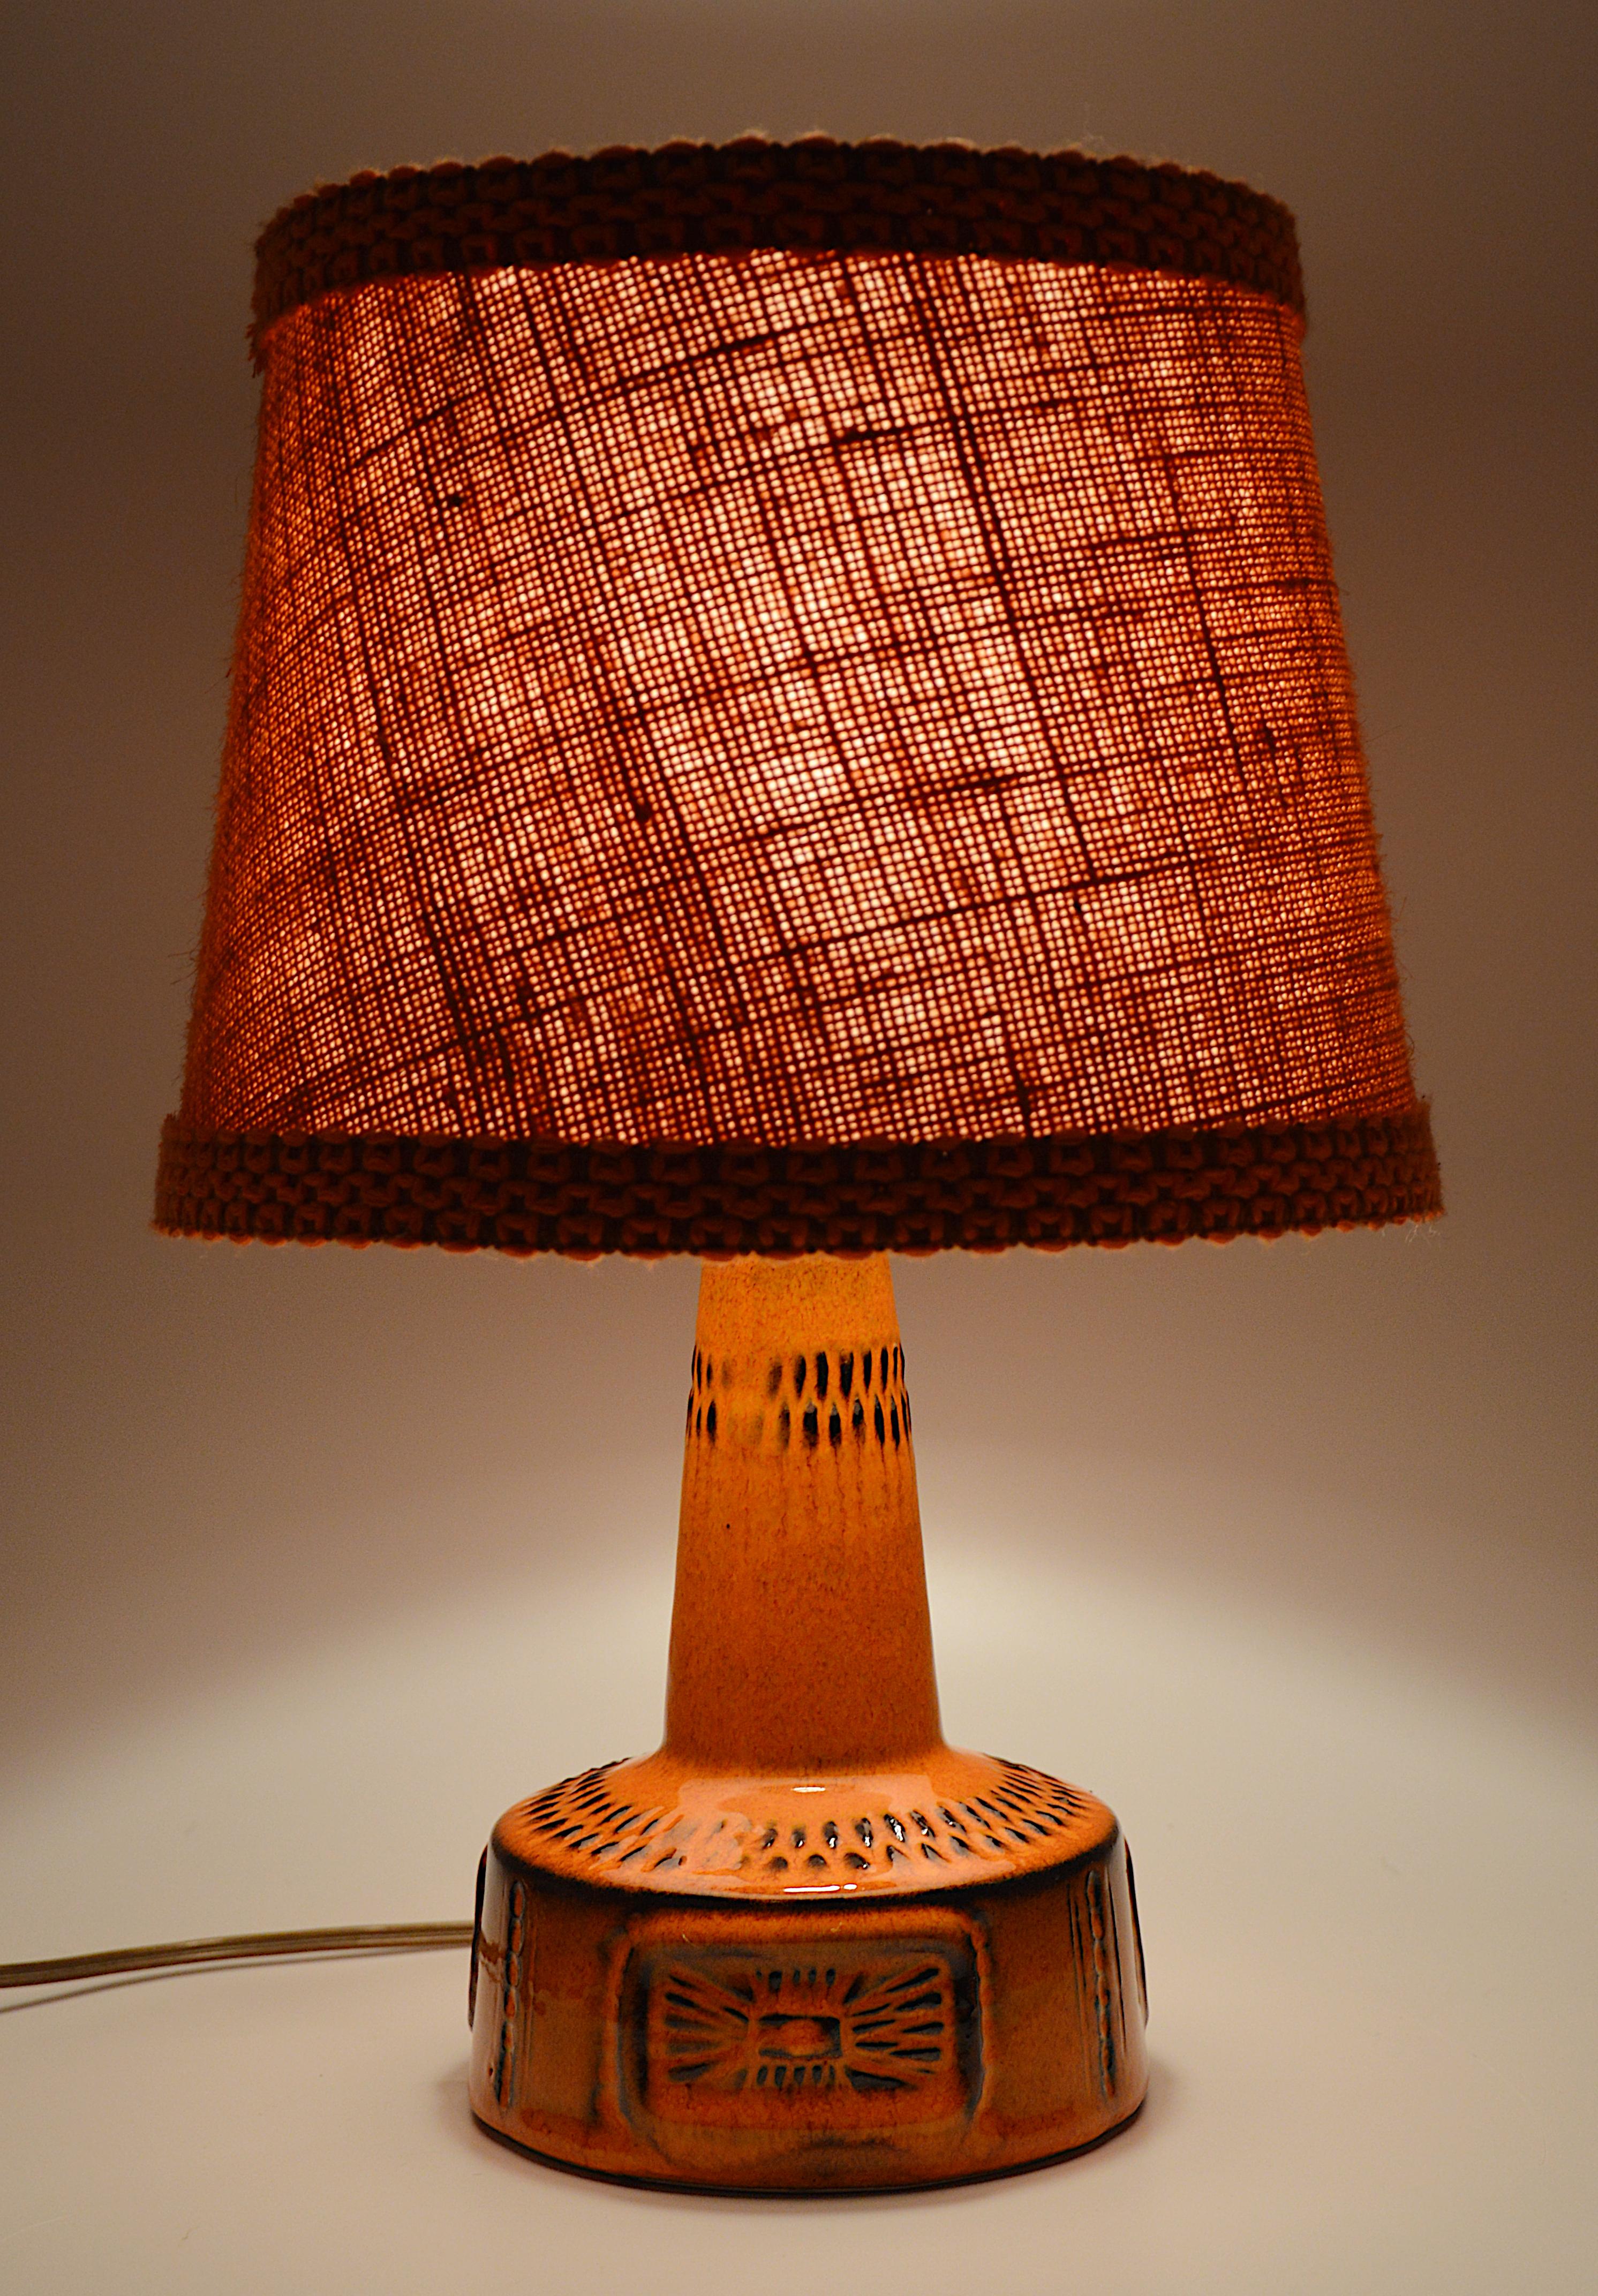 Lampe de table du milieu du siècle, Allemagne, années 1960. Ce socle en céramique est livré avec son abat-jour en tissu d'origine. Hauteur totale 33.5cm - 13.2 inches. Hauteur de la base en céramique 16cm - 6.3 inches. Diamètre total 22,5 cm - 8,9